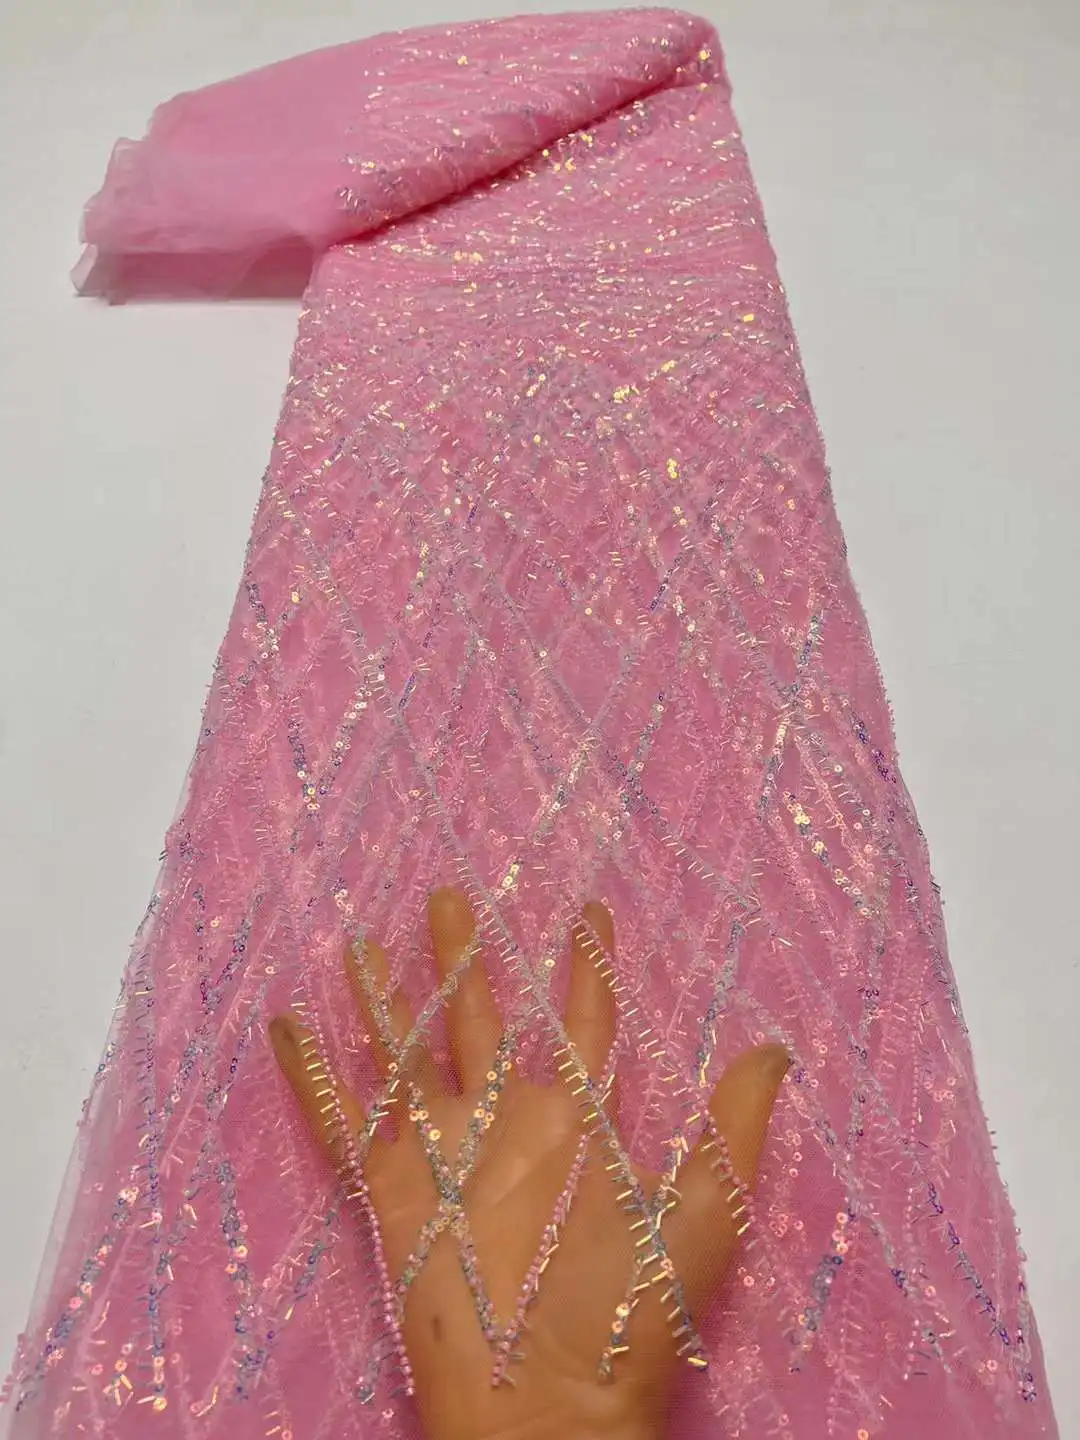 африкански тюл дантела плат розов високо качество дантела материал френски нигерийски луксозни пайети мъниста дантела плат за сватба шиене 0